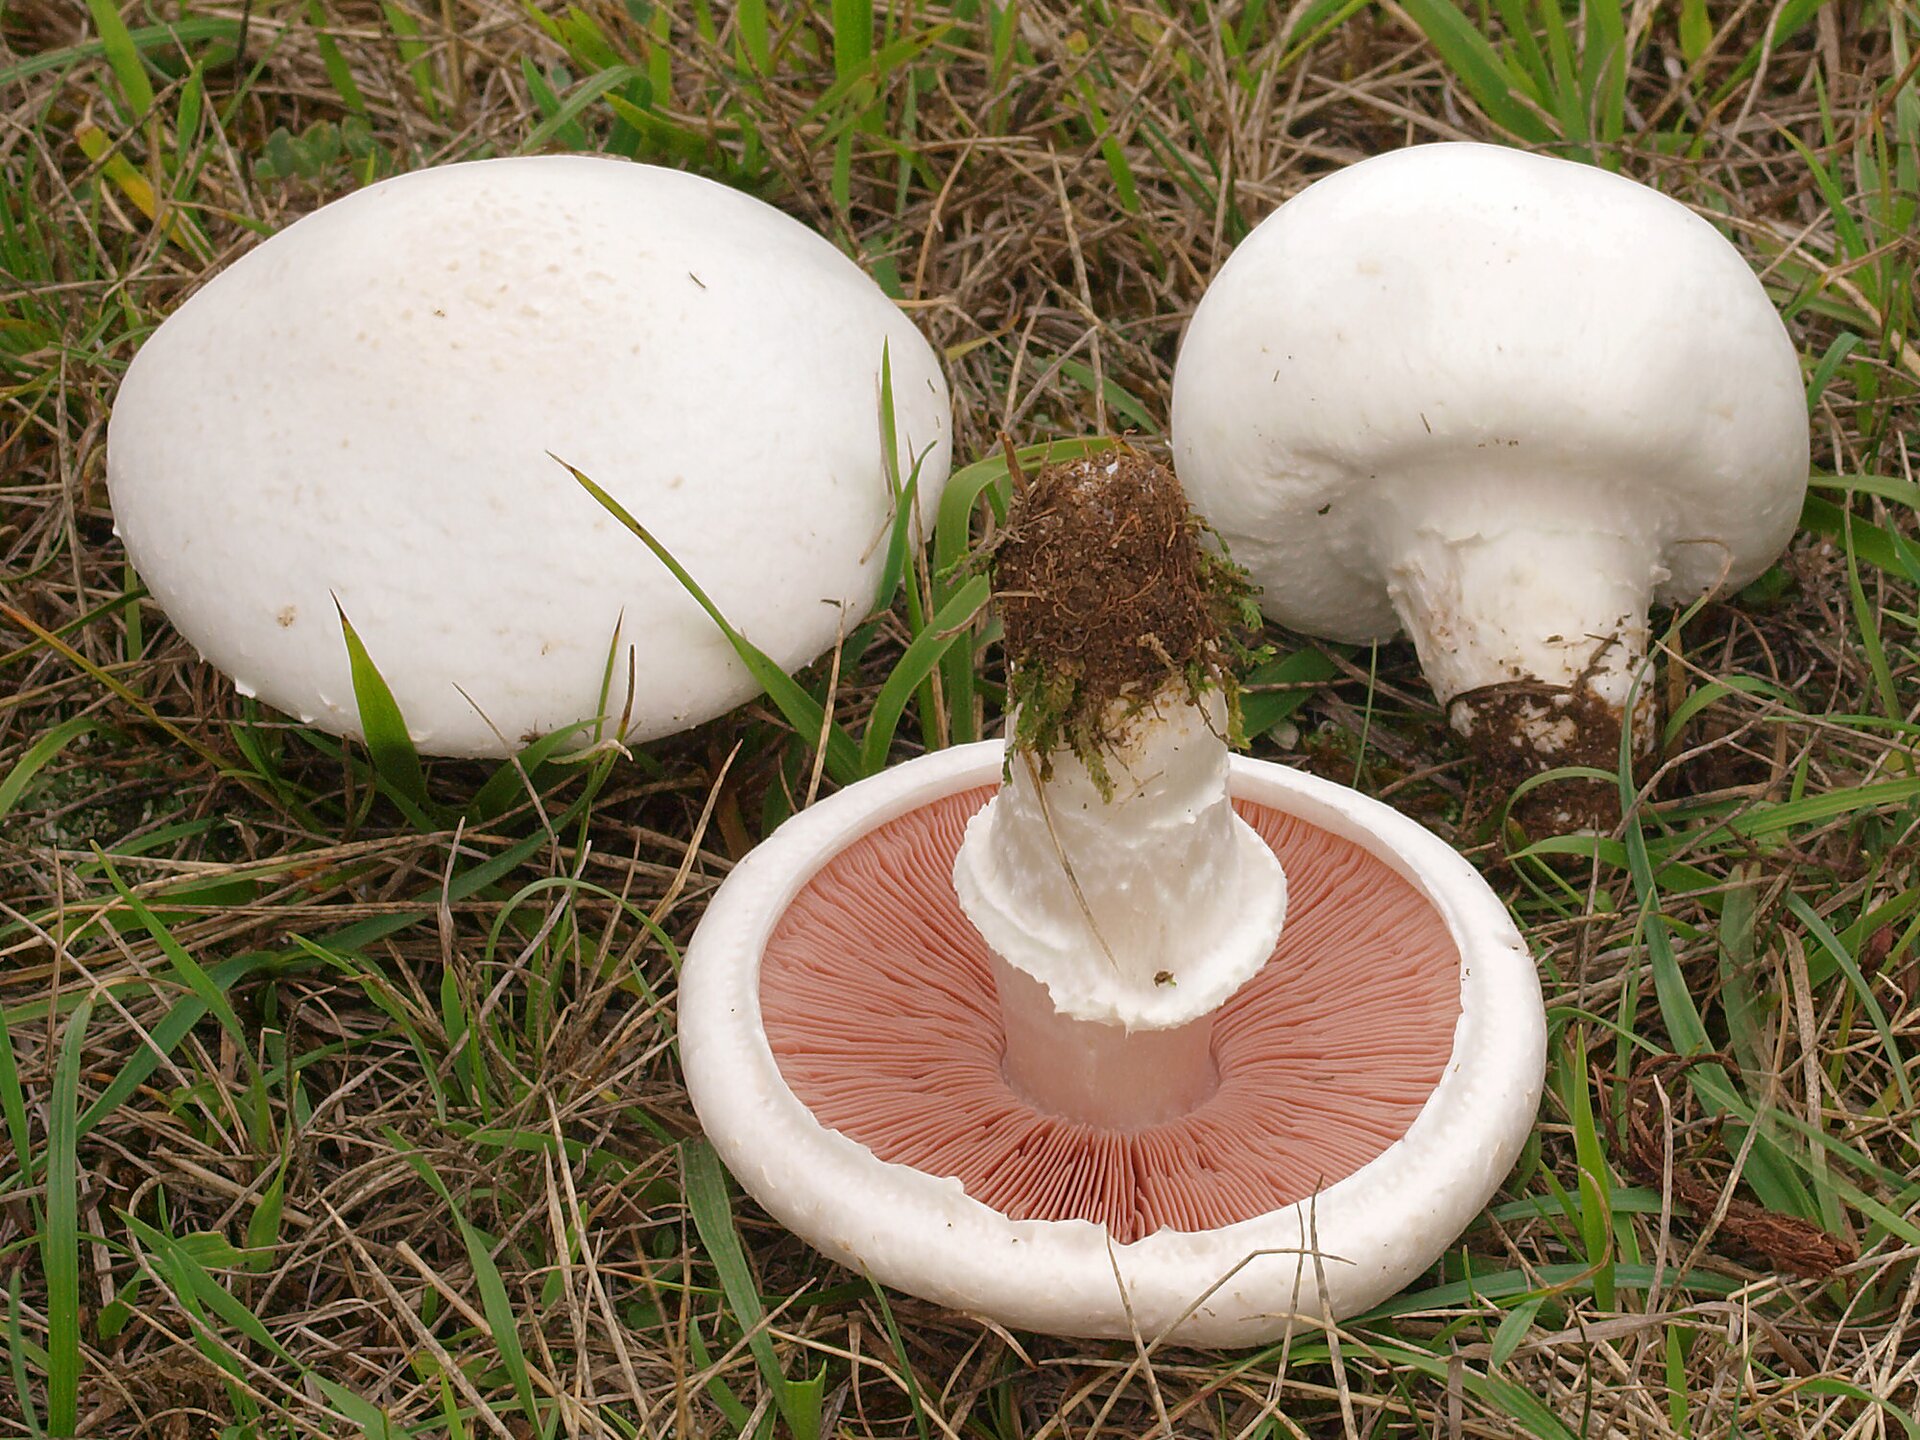 Na zdjęciu trzy białe grzyby z blaszkami pod spodem kapelusza.